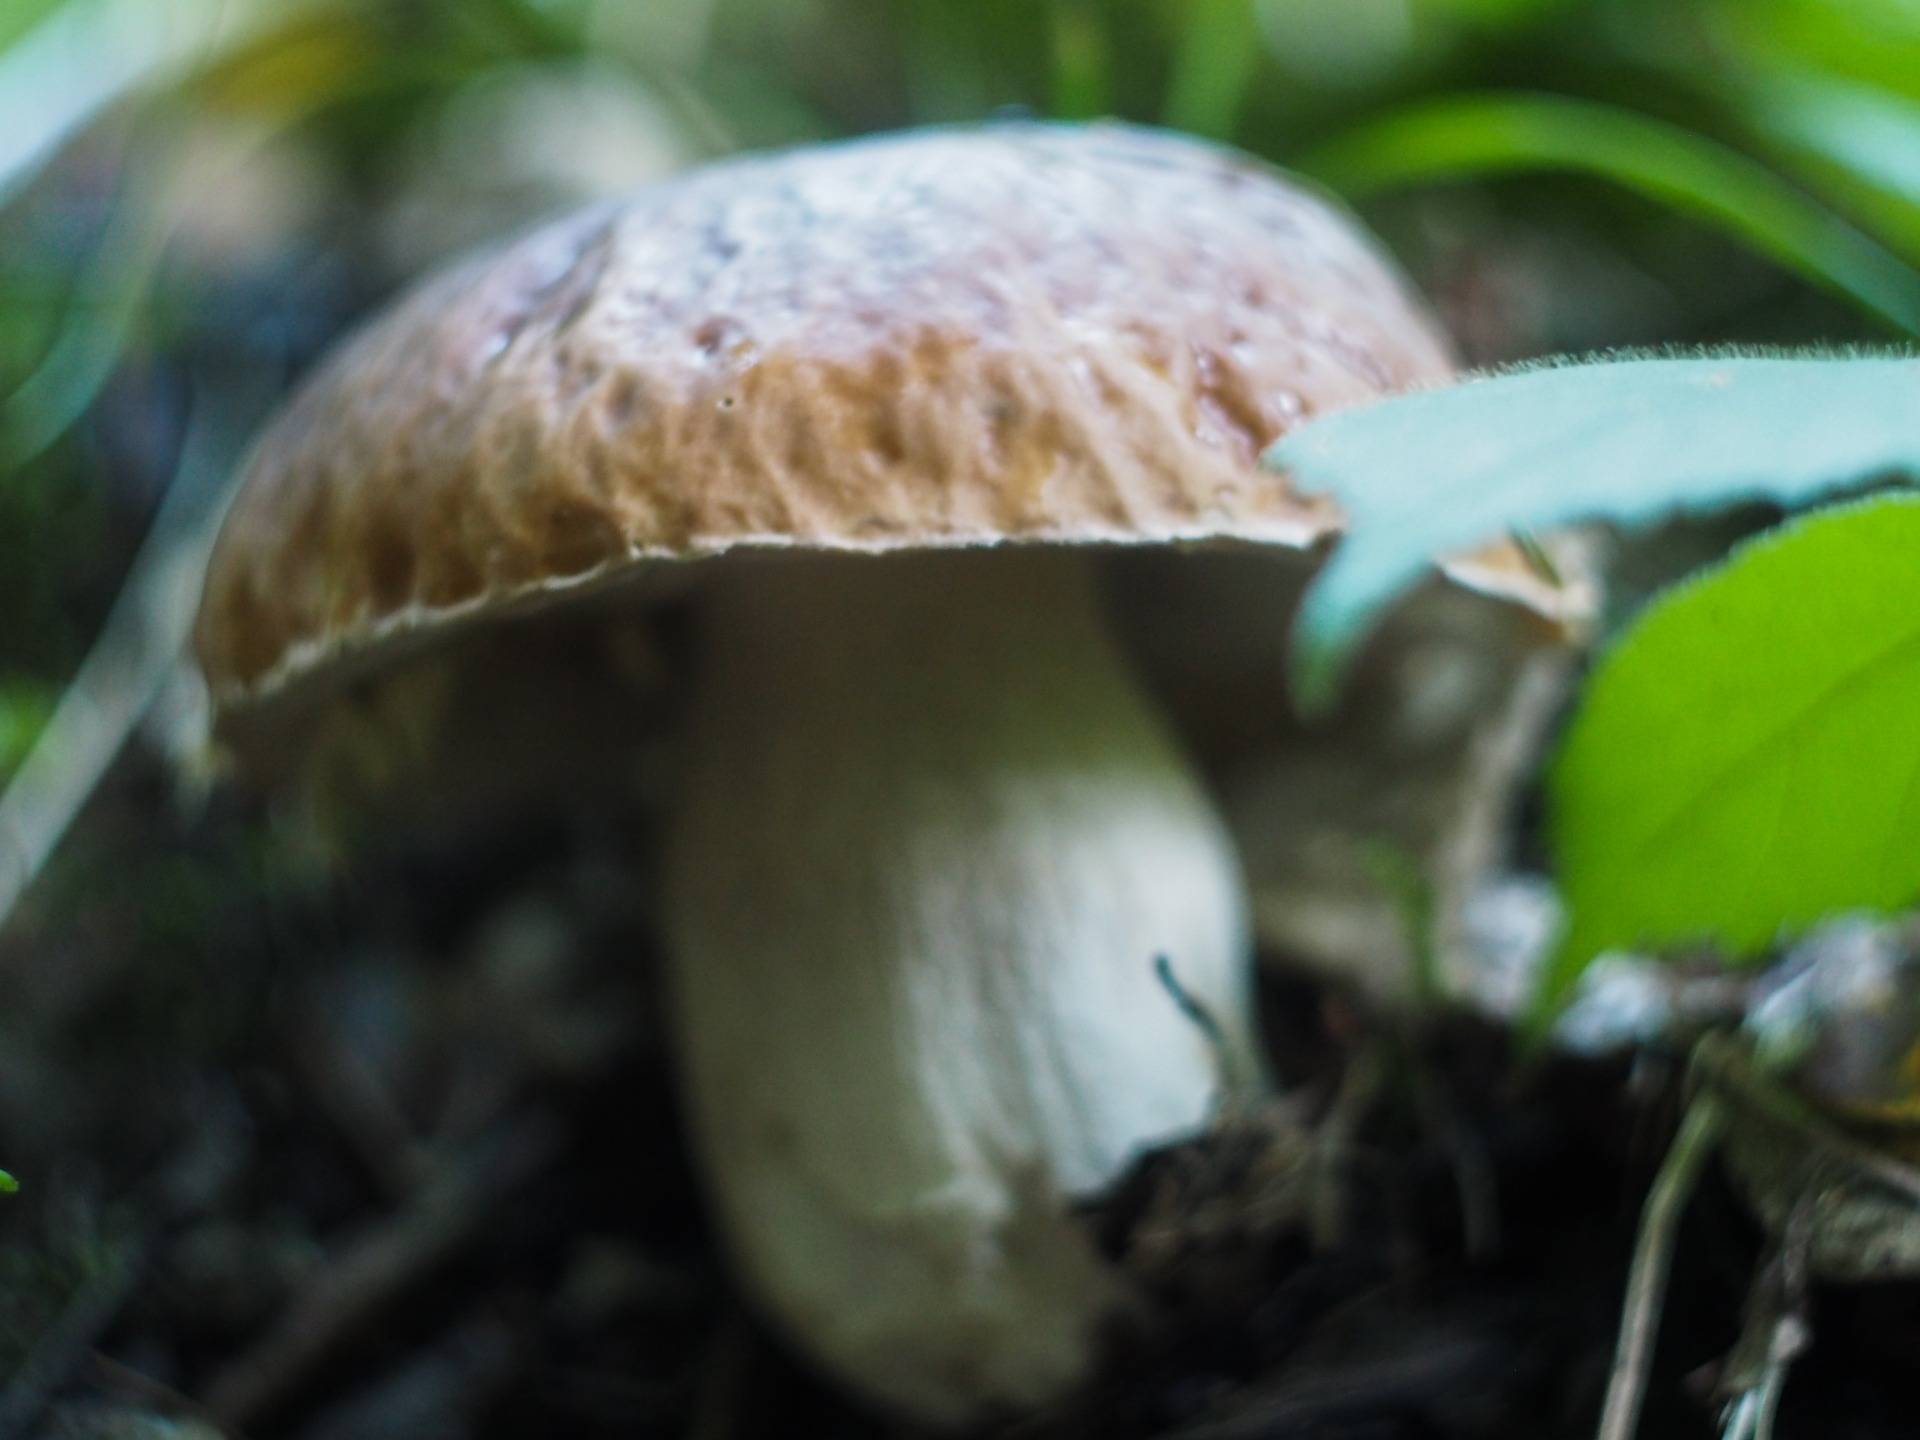 Boletus edulis, edible mushroom